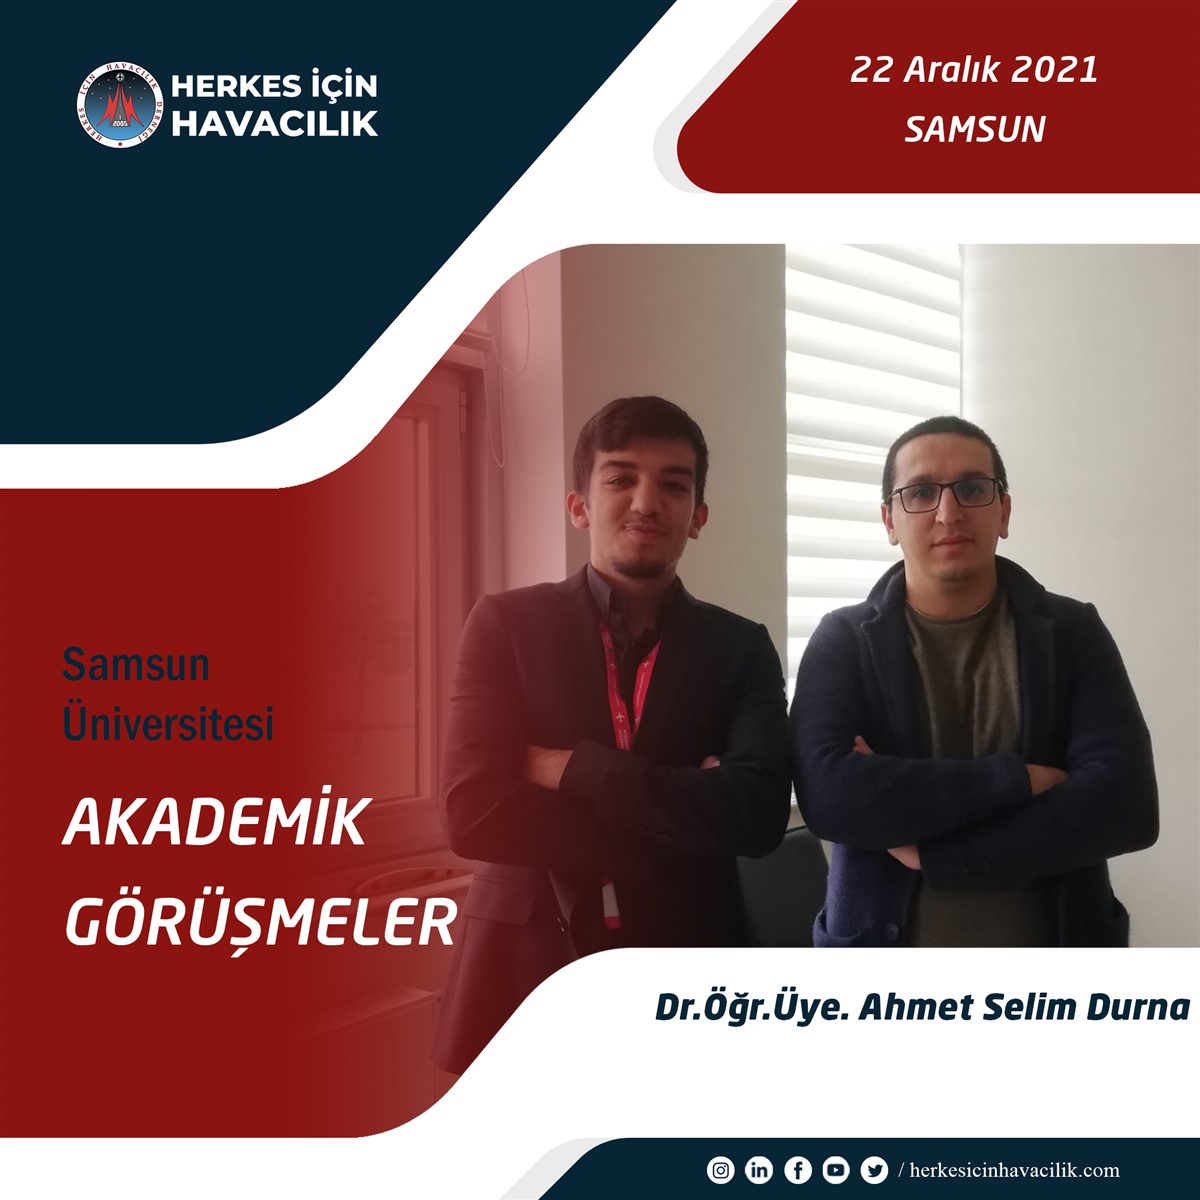 Dr. Öğretim Üyesi Ahmet Selim Durna